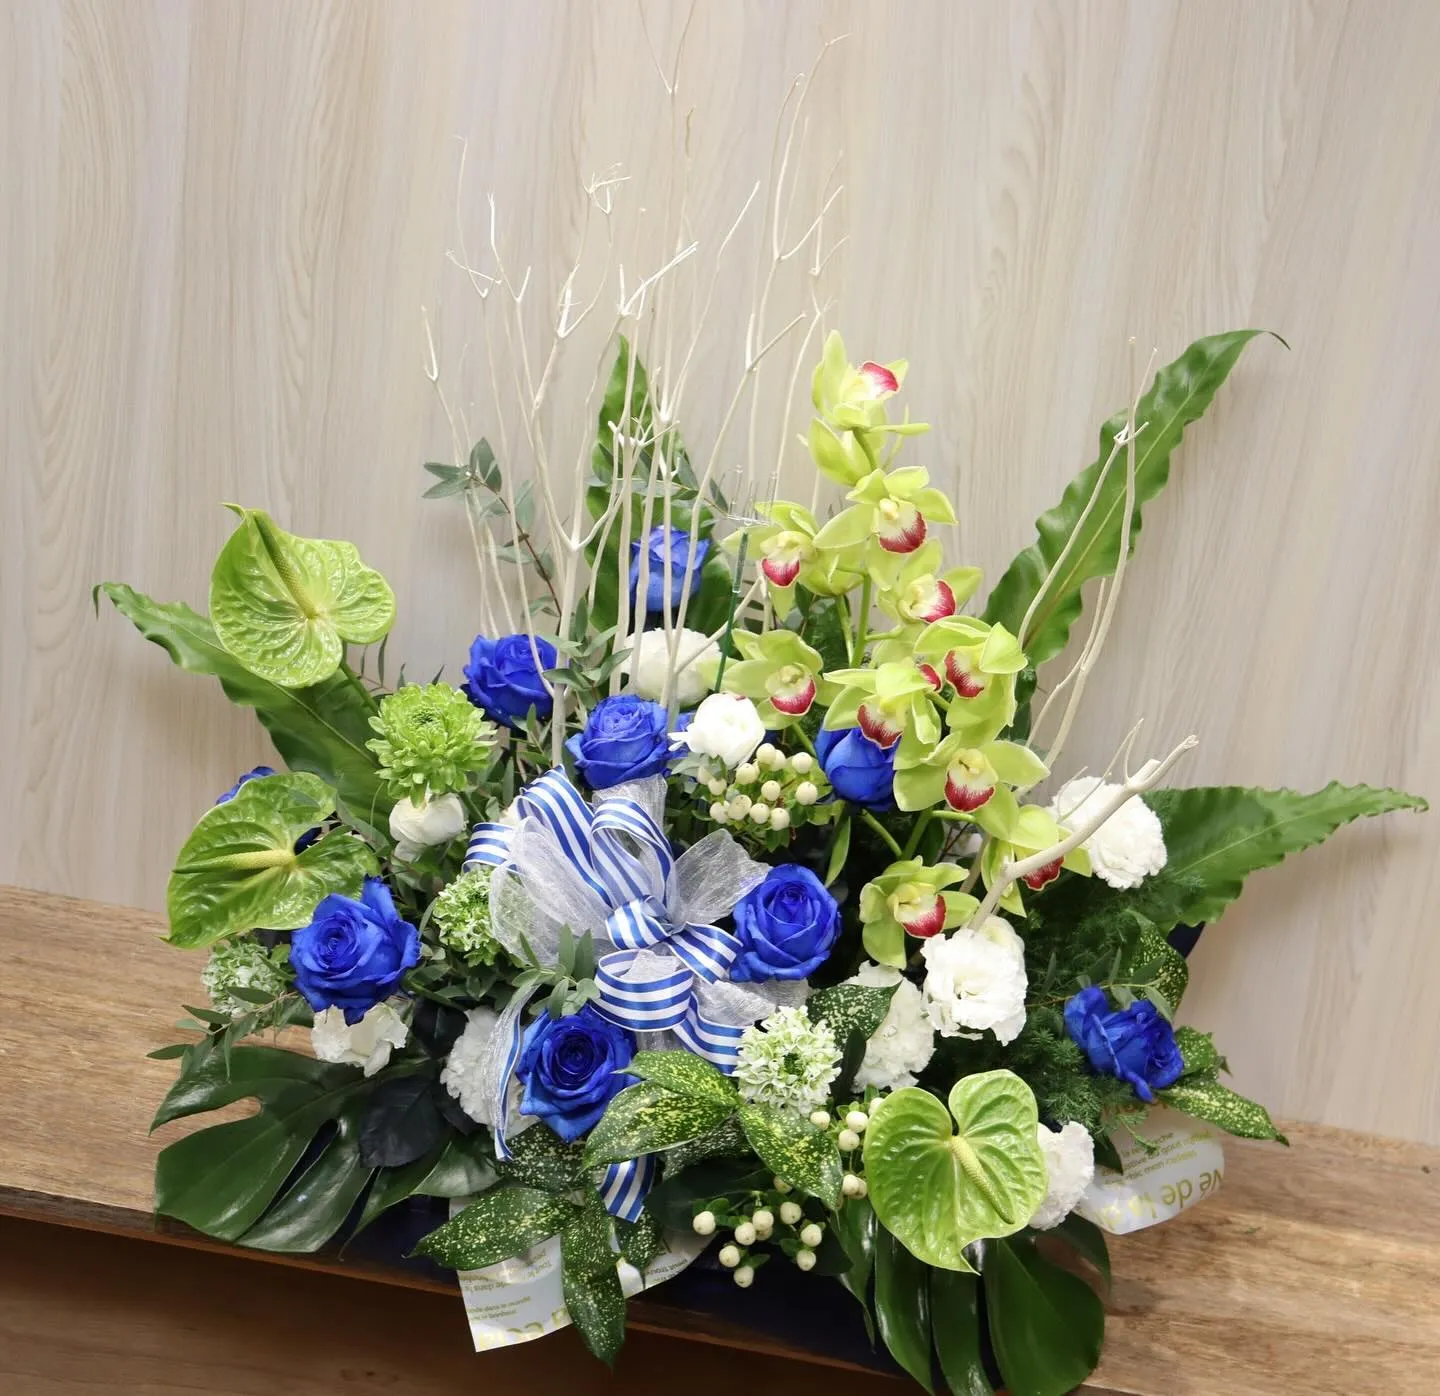 ふじみ野市の美容師さんからお客様の結婚式お祝いで贈られたお花...